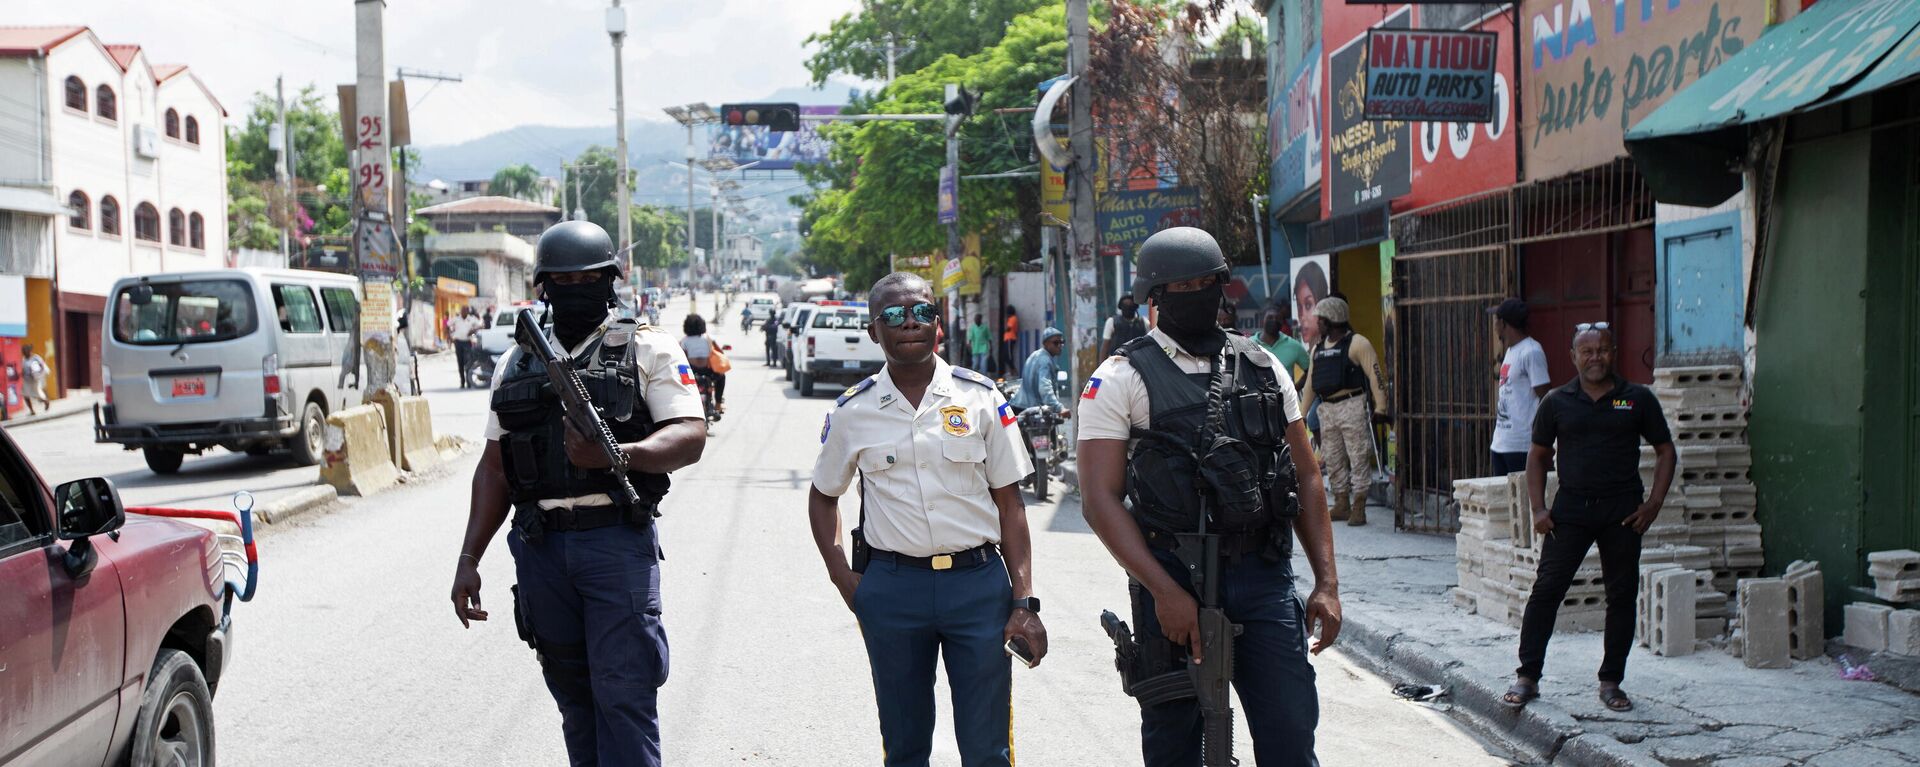 Policía en una calle de Puerto Príncipe, Haití - Sputnik Mundo, 1920, 01.11.2021